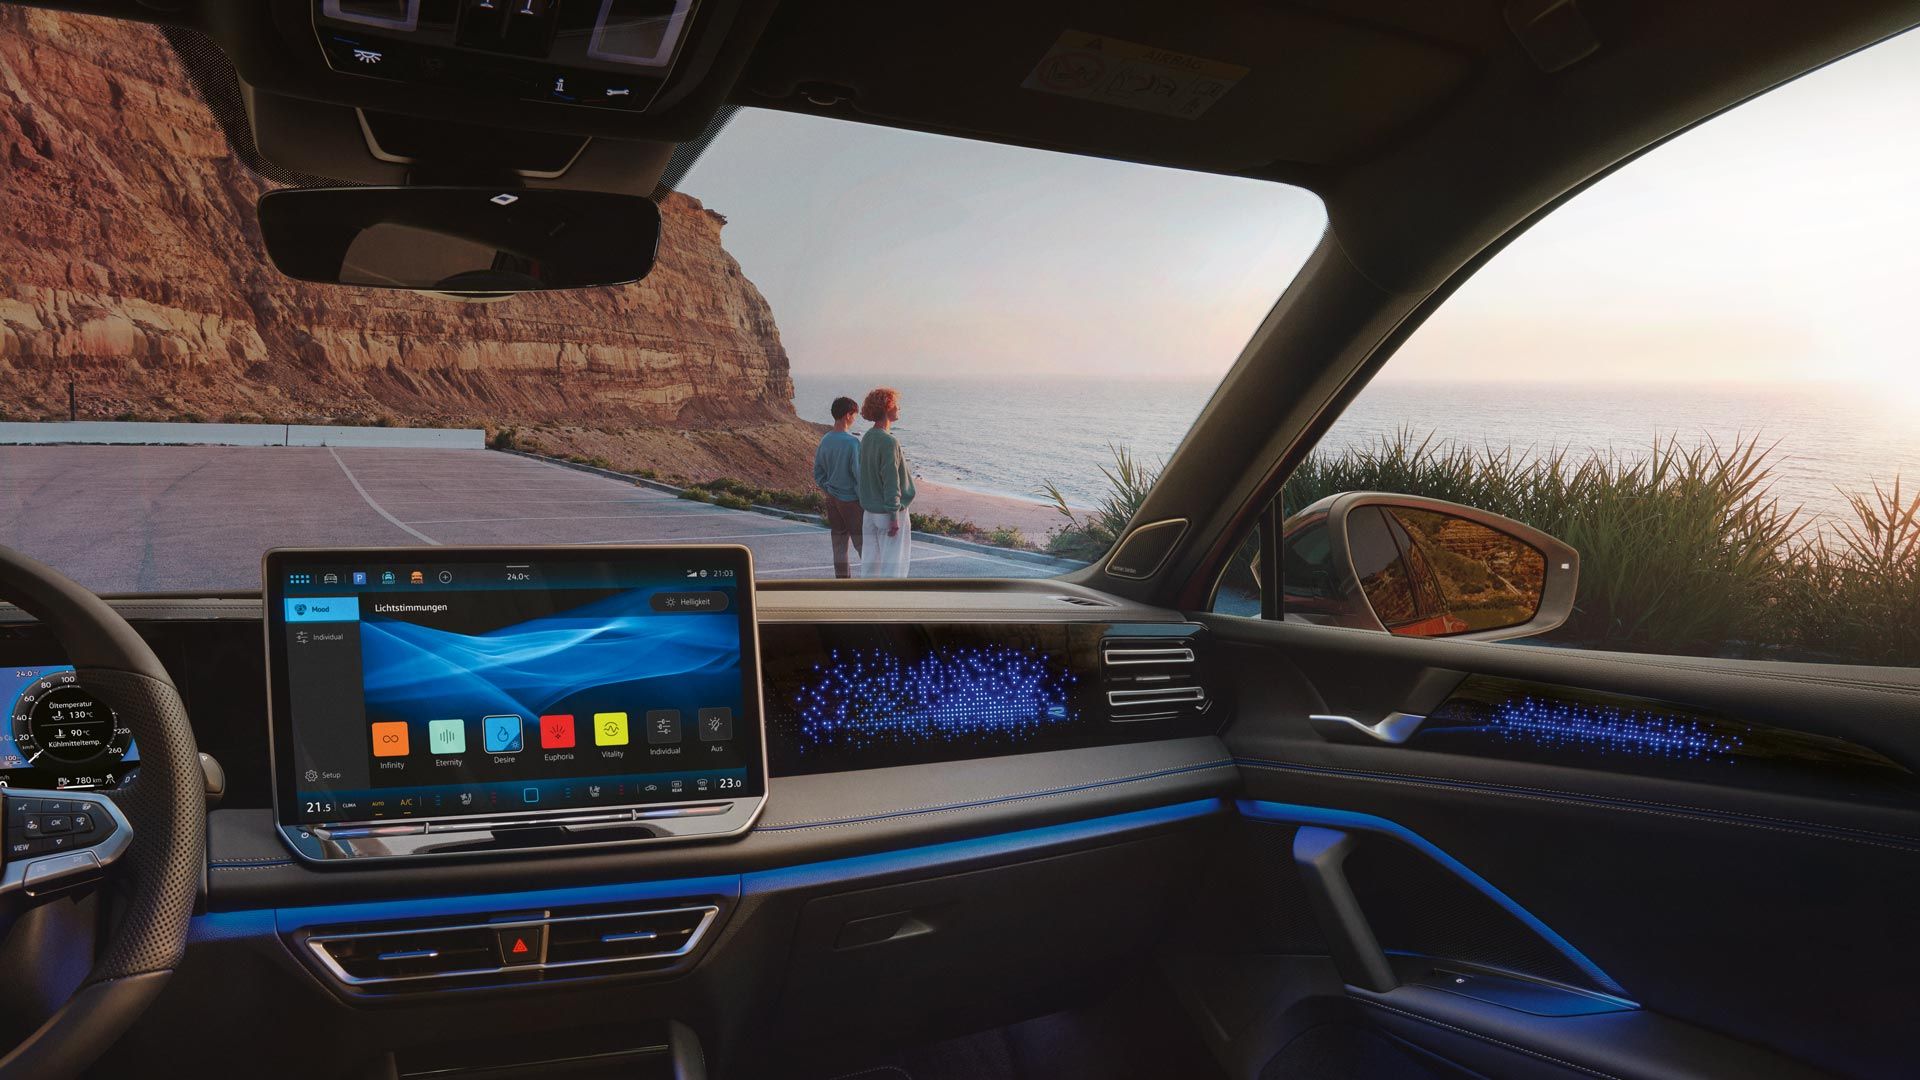 Farbdisplay zeigt Einstellungen des Ambientelichts, Innenraum des VW Tiguan ist blau beleuchtet.